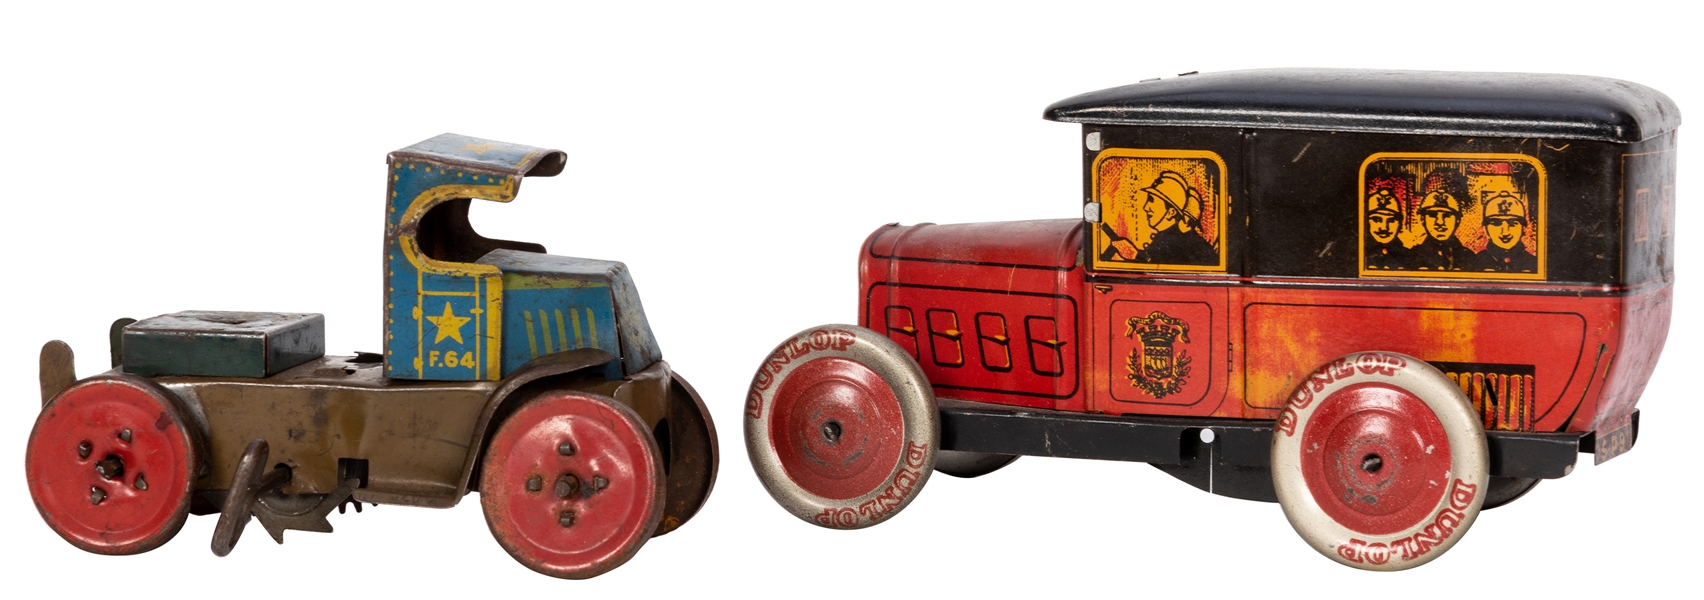 Two Tin Litho Toy Trucks